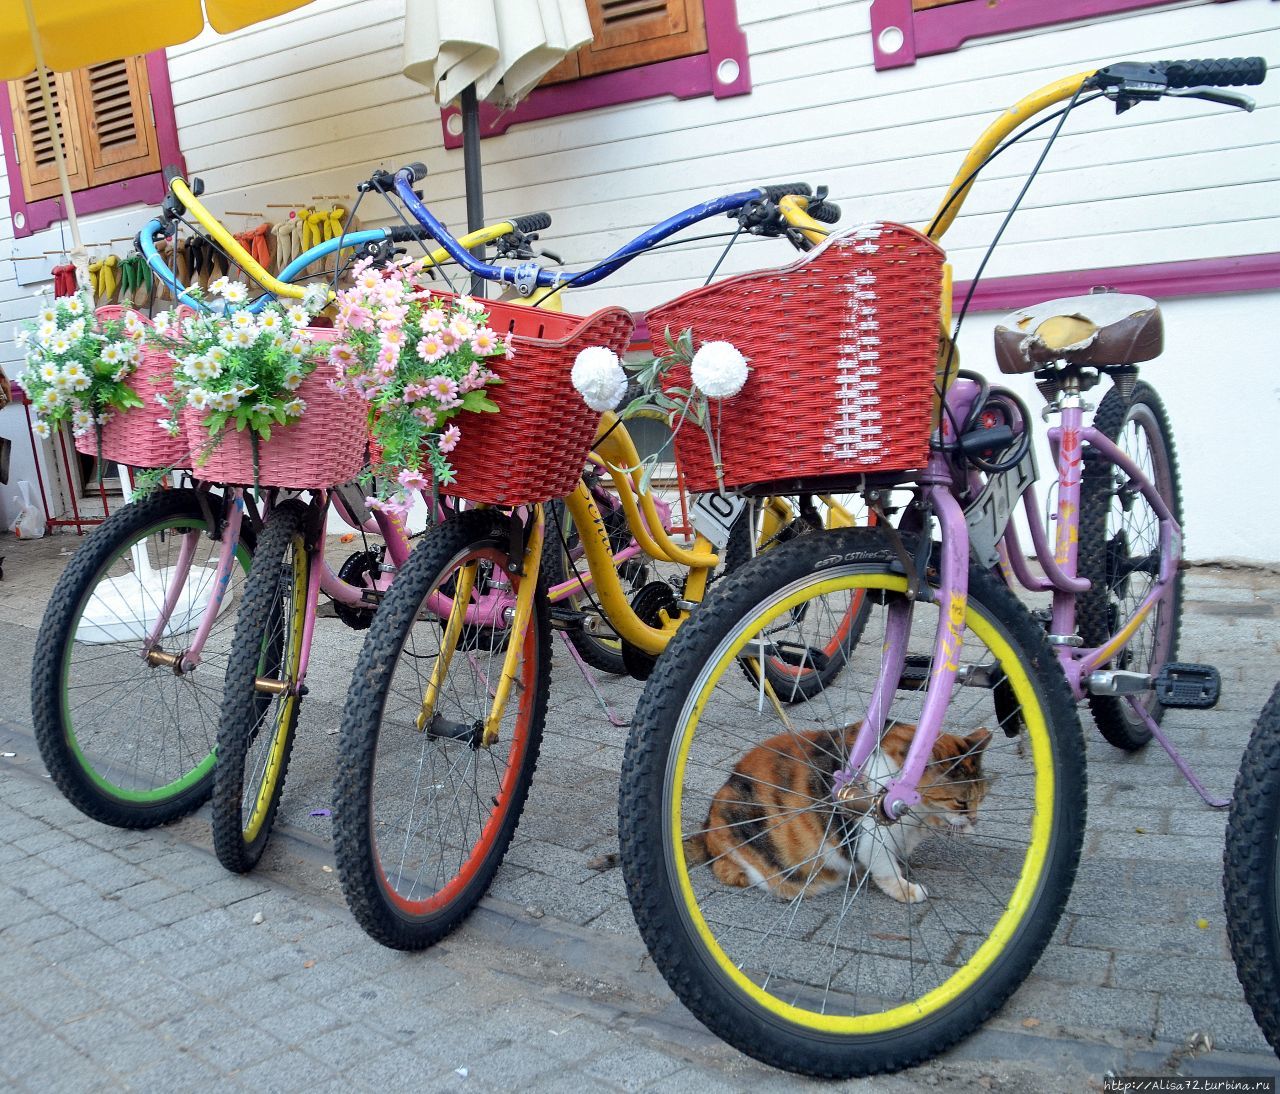 Каждая принцесса по желанию может взять специальный принцесский велосипед на прокат. Стамбул, Турция